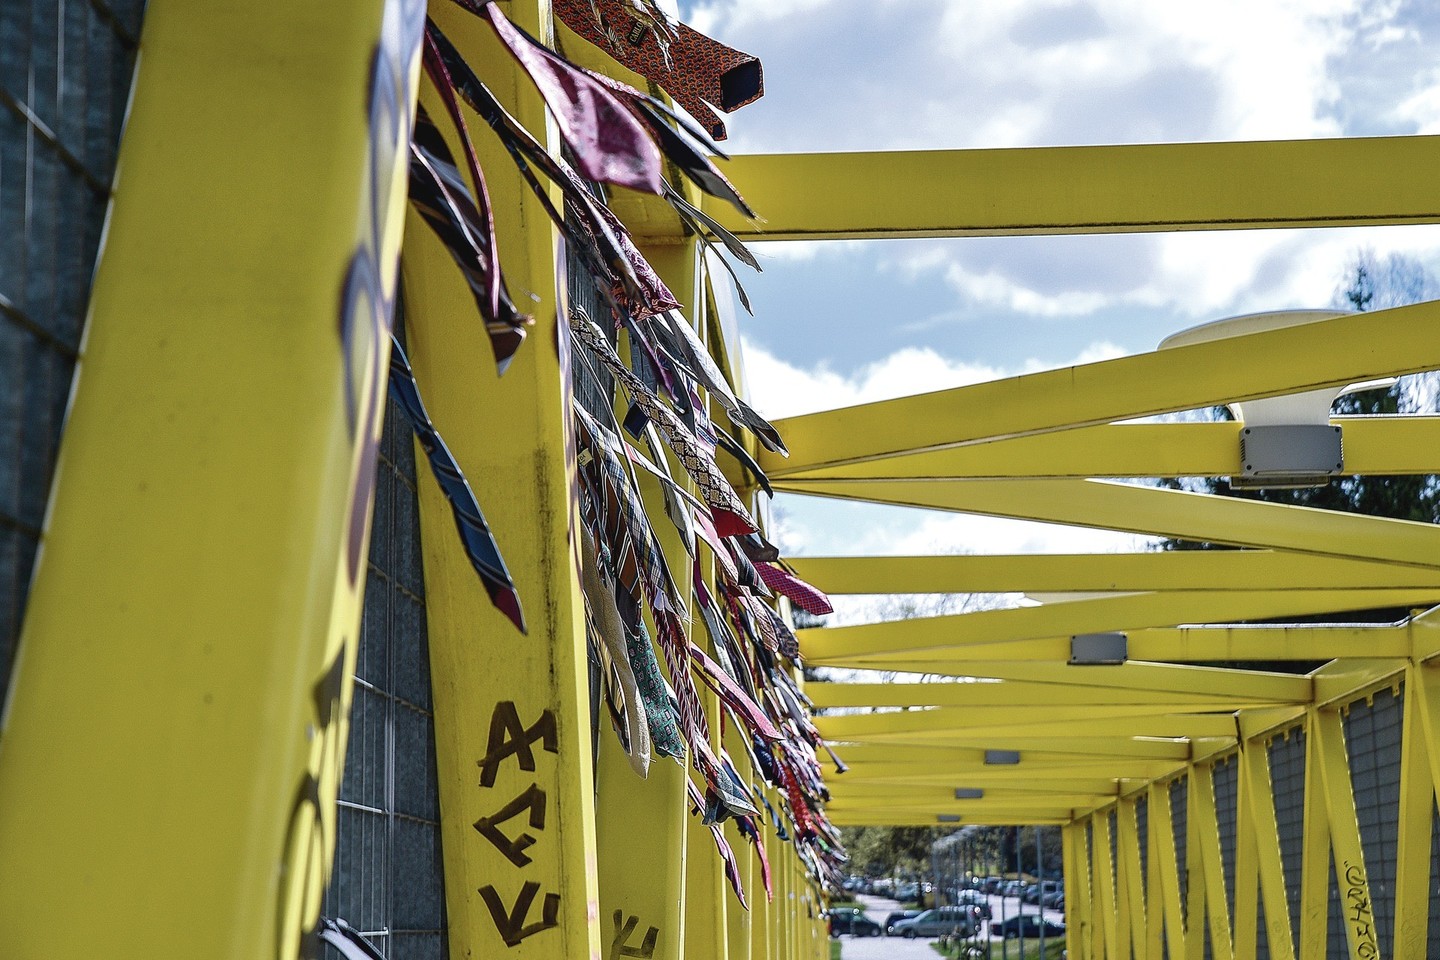 Pirmieji kaklaraiščiai ant pėsčiųjų tilto, esančio virš vakarinio aplinkkelio, buvo užrišti 2015 metų balandį.<br>V.Ščiavinsko nuotr.